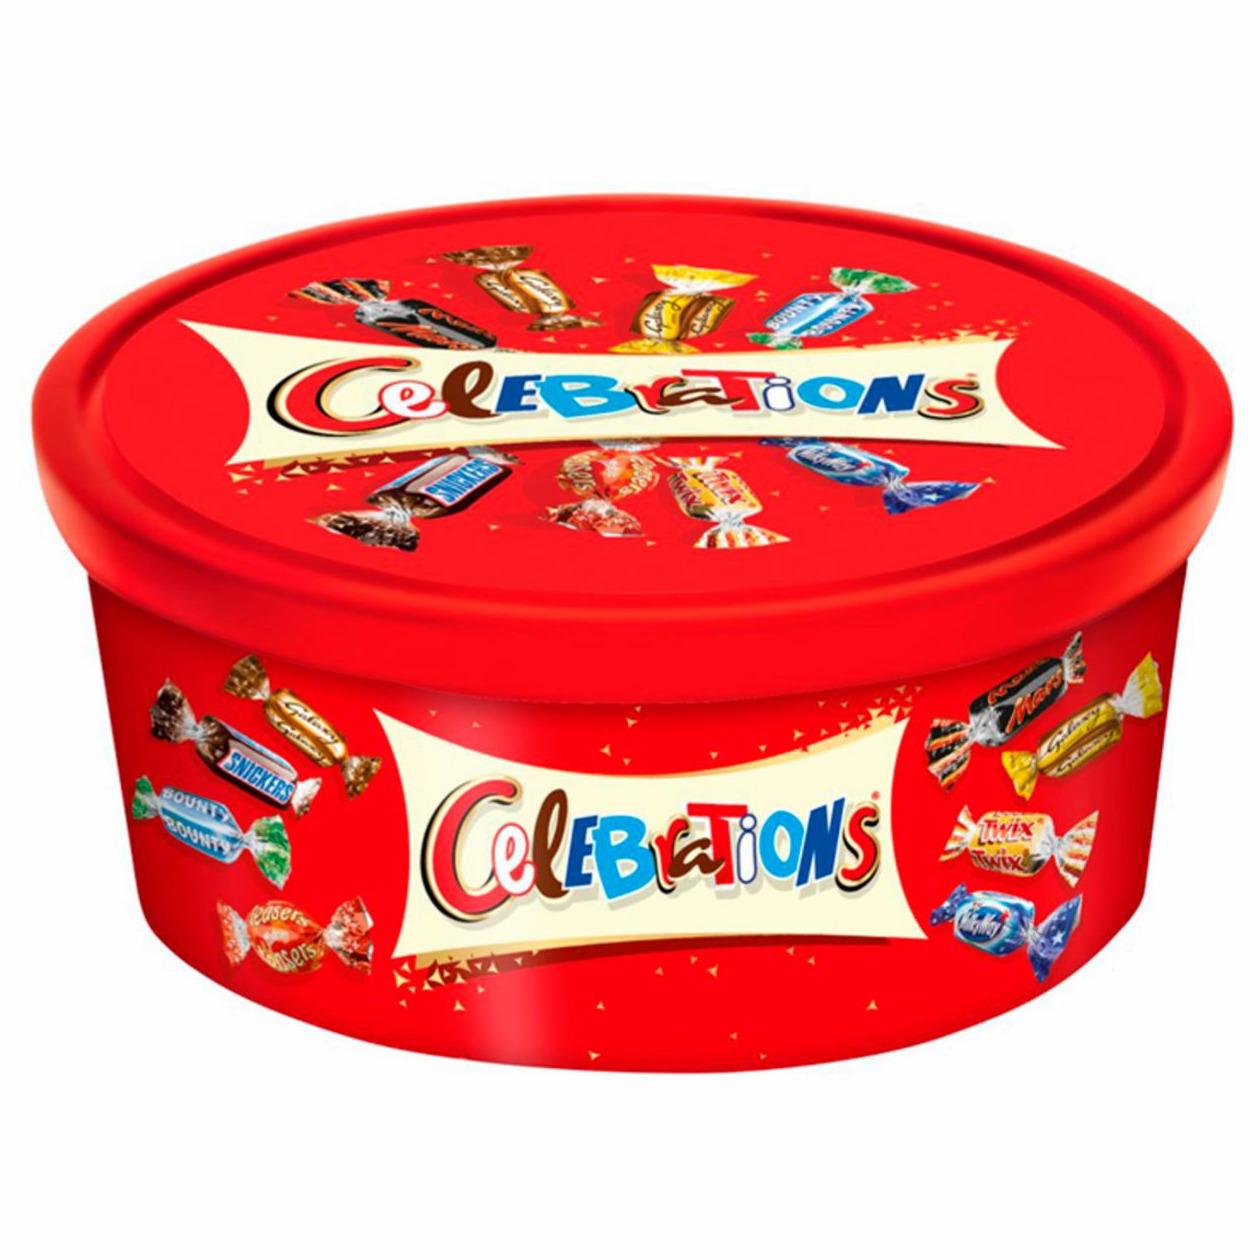 Zdjęcia - Celebrations Wybór czekoladowych cukierków i ciasteczek oblanych mleczną czekoladą 650 g